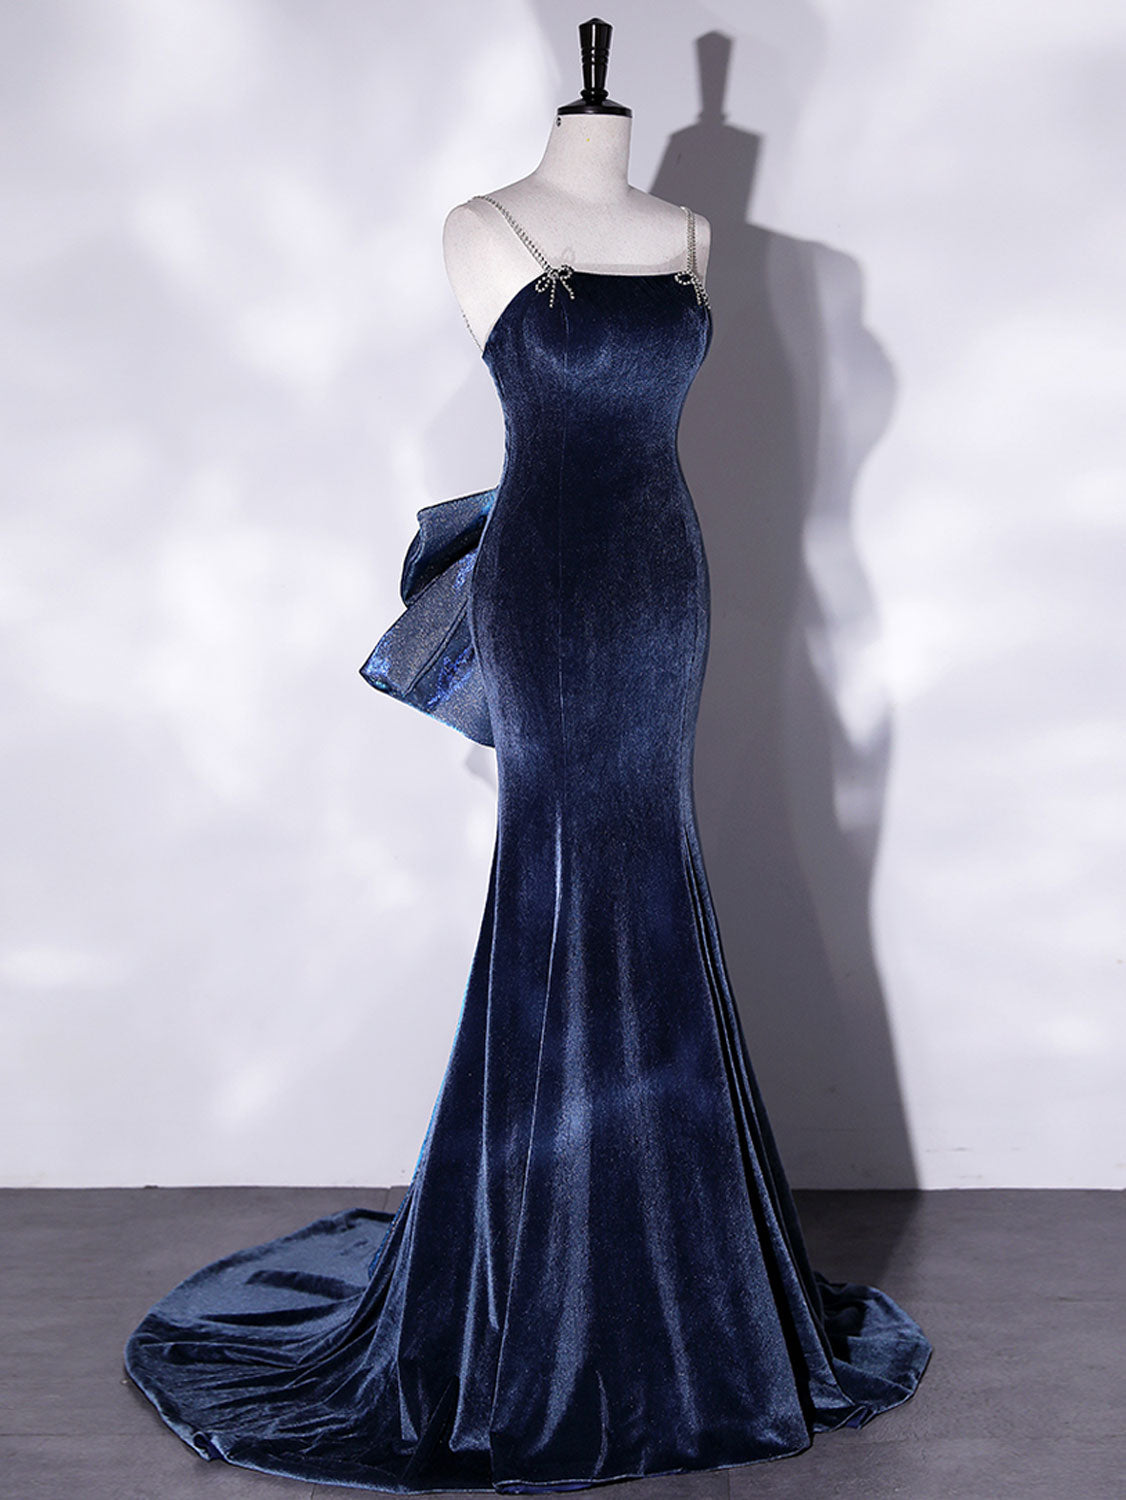 Buy Aashish Fabrics Women's Blue Long Velvet Dress (Blue-Long-Velevt-Dress-M-P,  Large) at Amazon.in